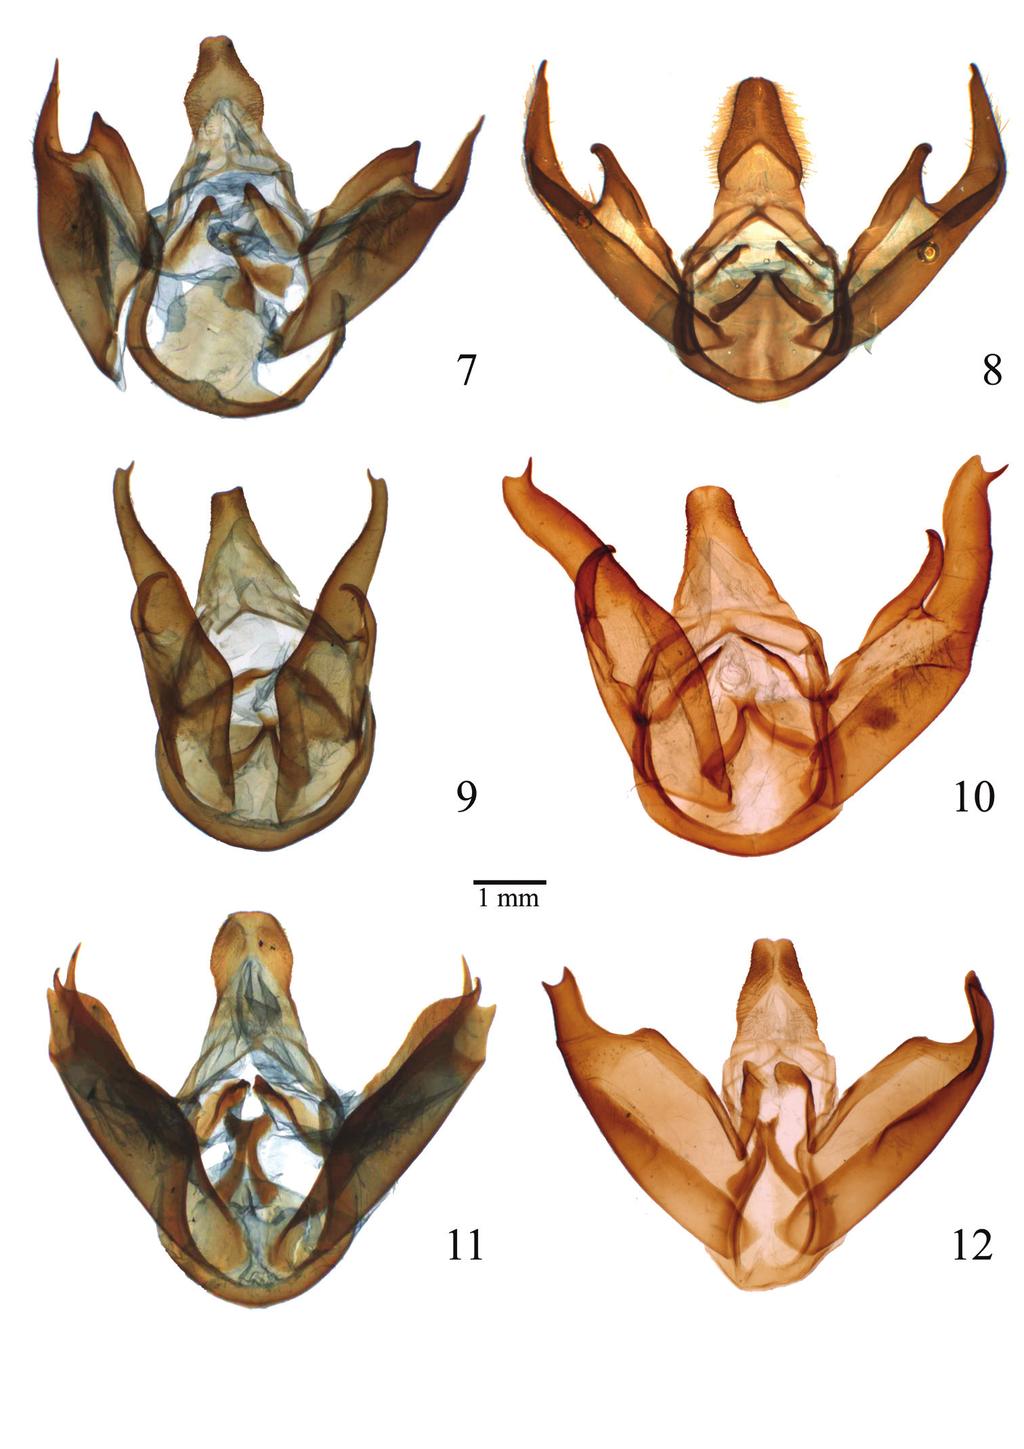 52 Benoit Vincent & Michel Laguerre / ZooKeys 264: 47 69 (2013) Figures 7 12. Male genitalia of Lophocampa species.